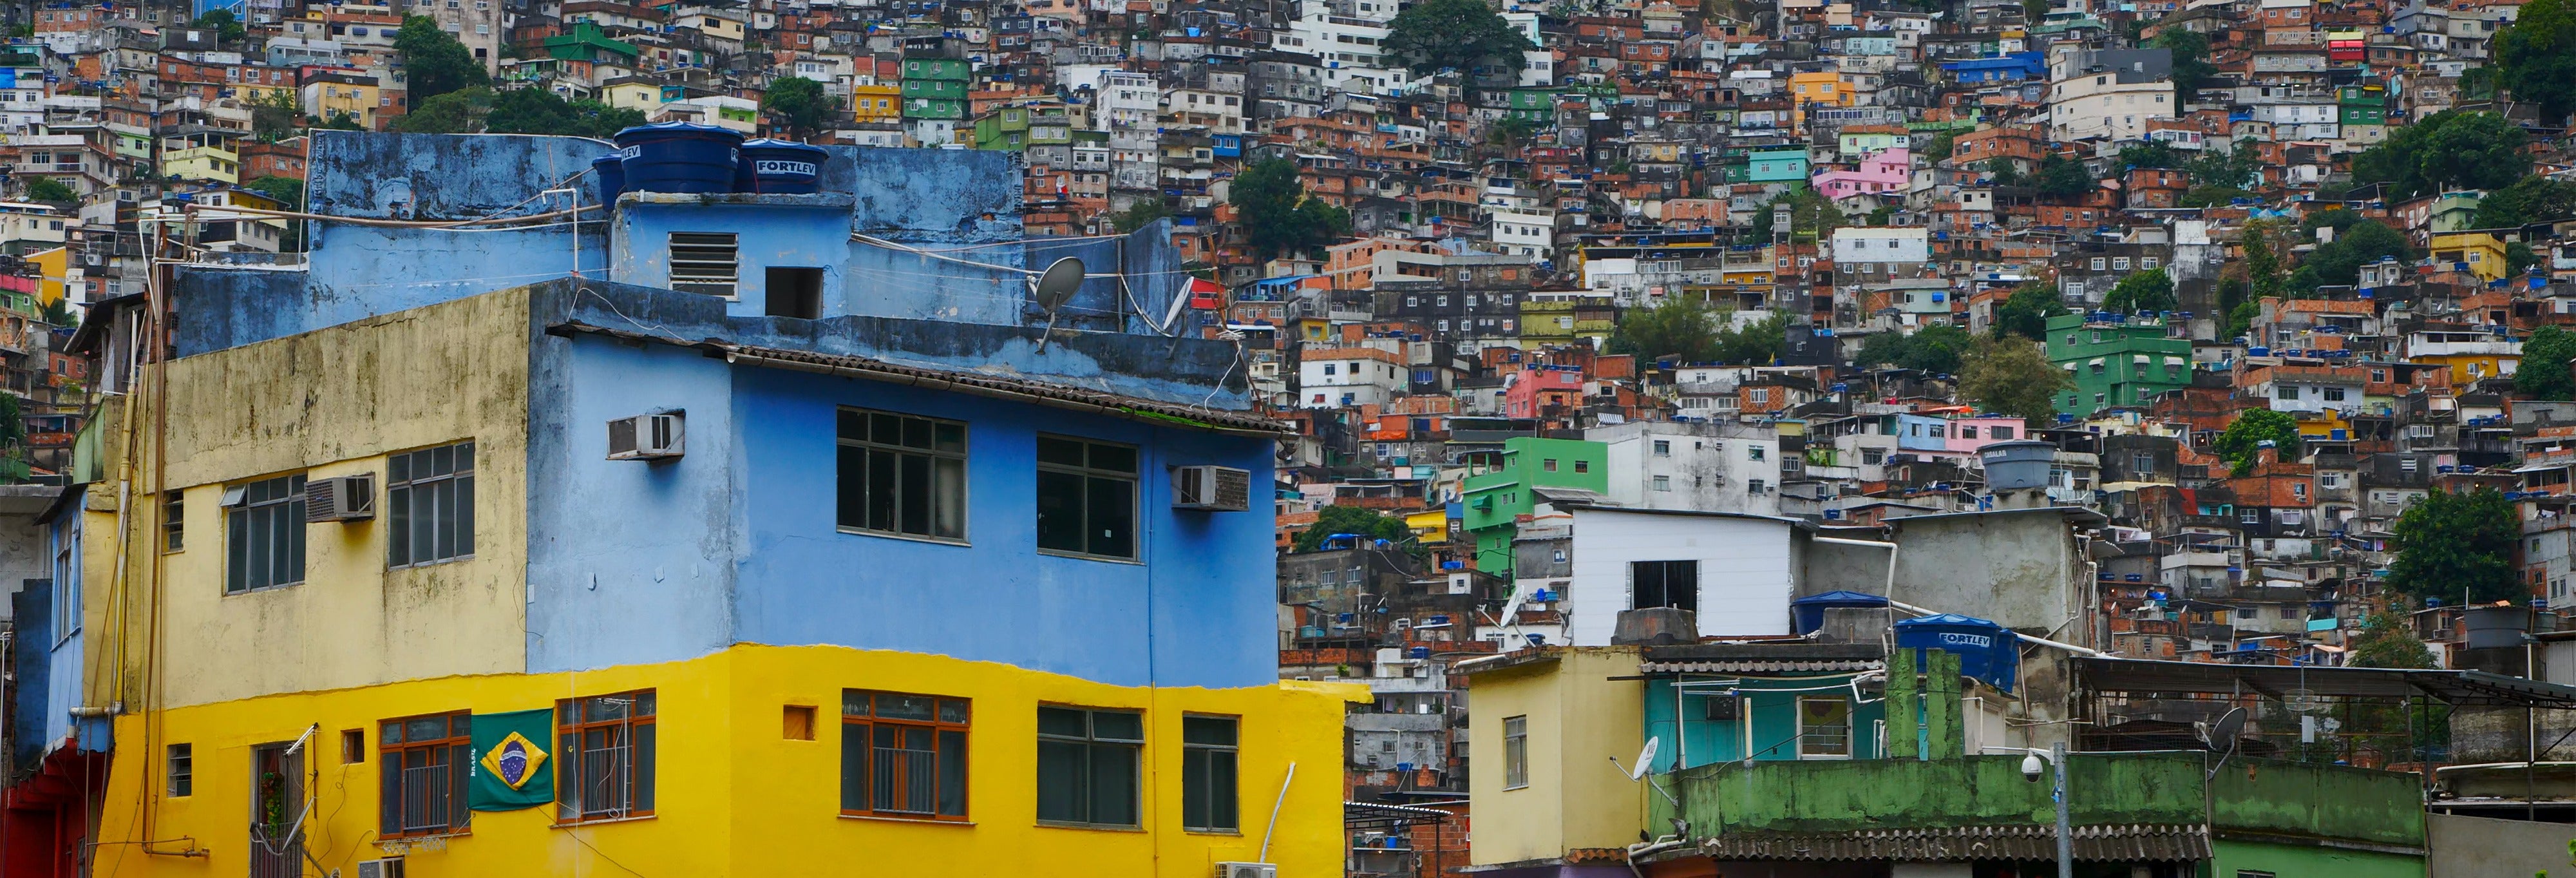 Tour pela favela da Rocinha